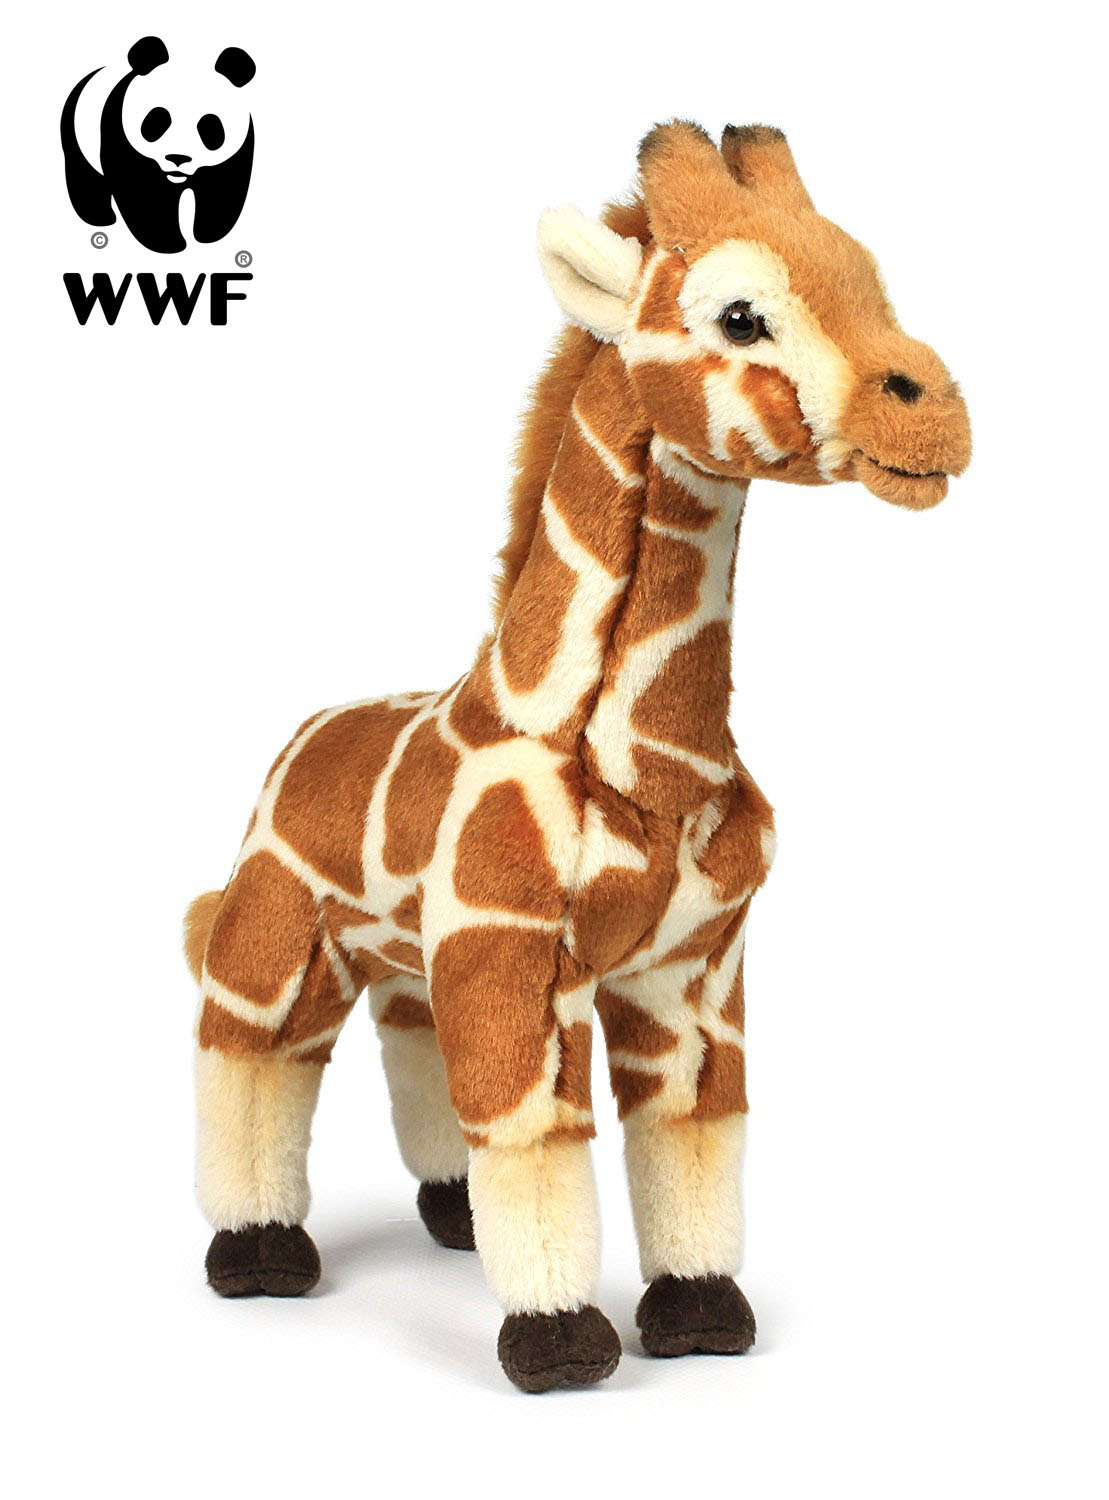 XXL Plüschtier Giraffe 100 cm Sunkid Kuscheltier weich Plüsch braun Stofftier 